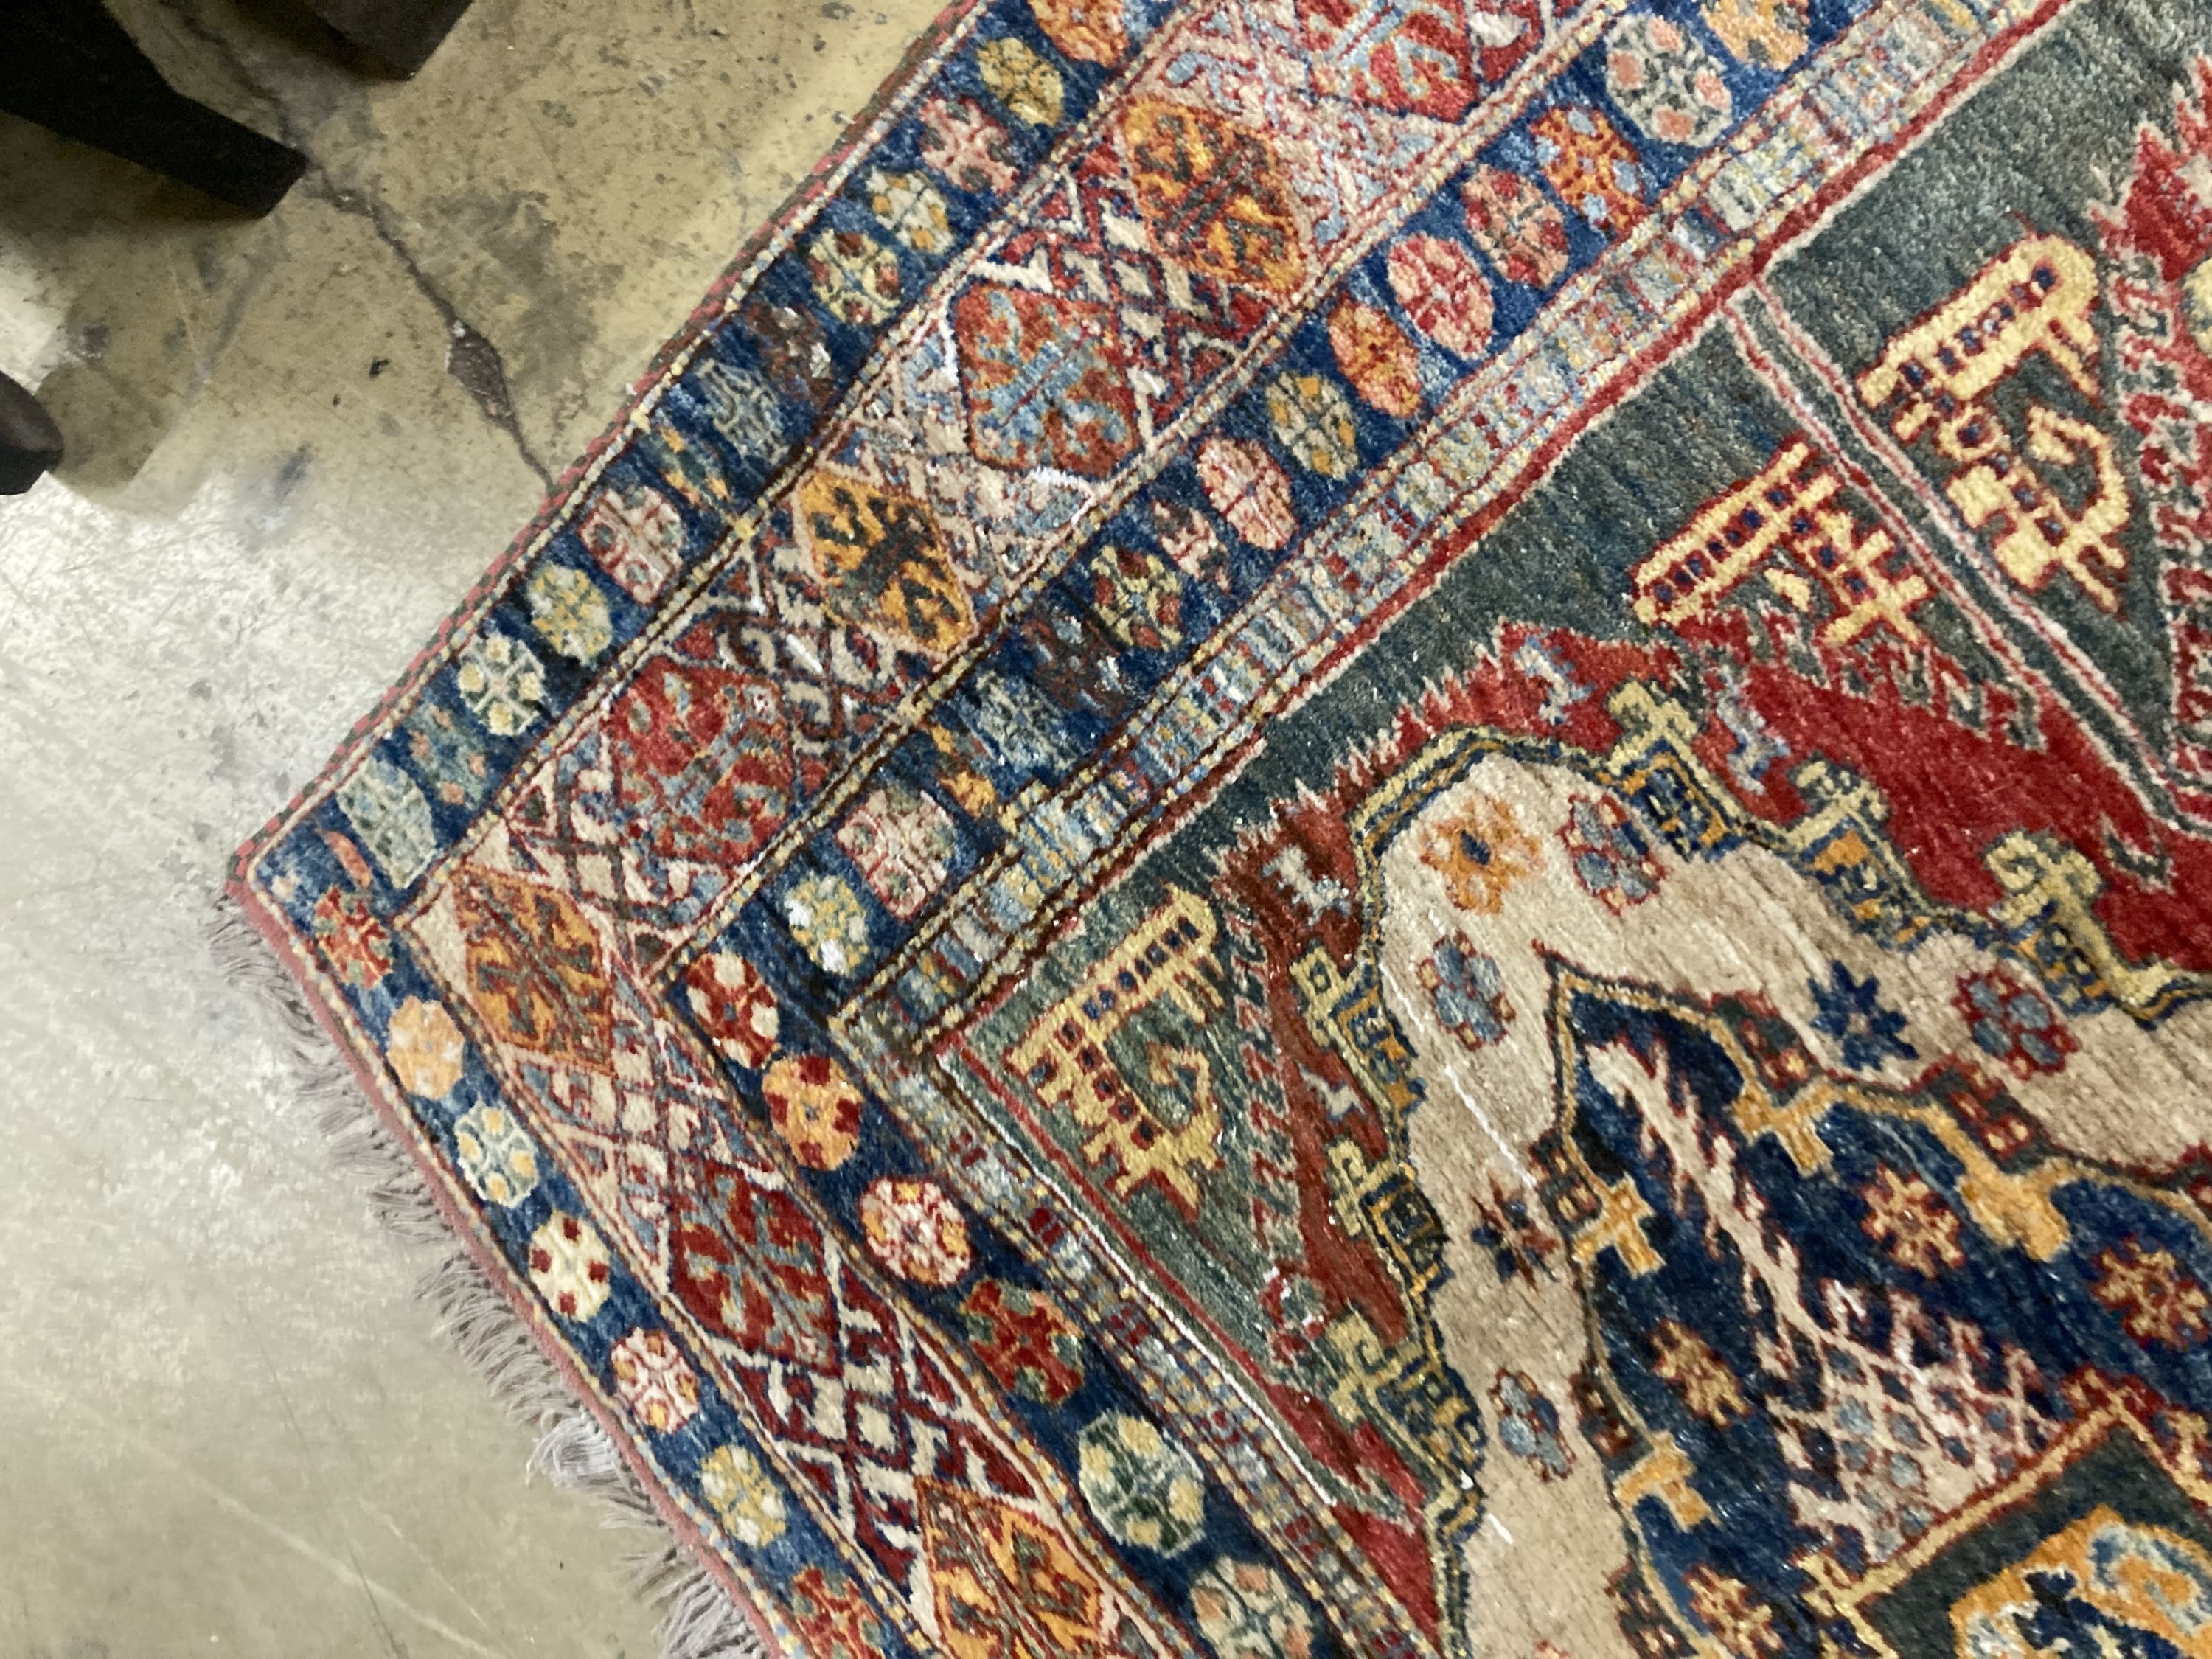 A Caucasian design carpet, 200 x 220cm